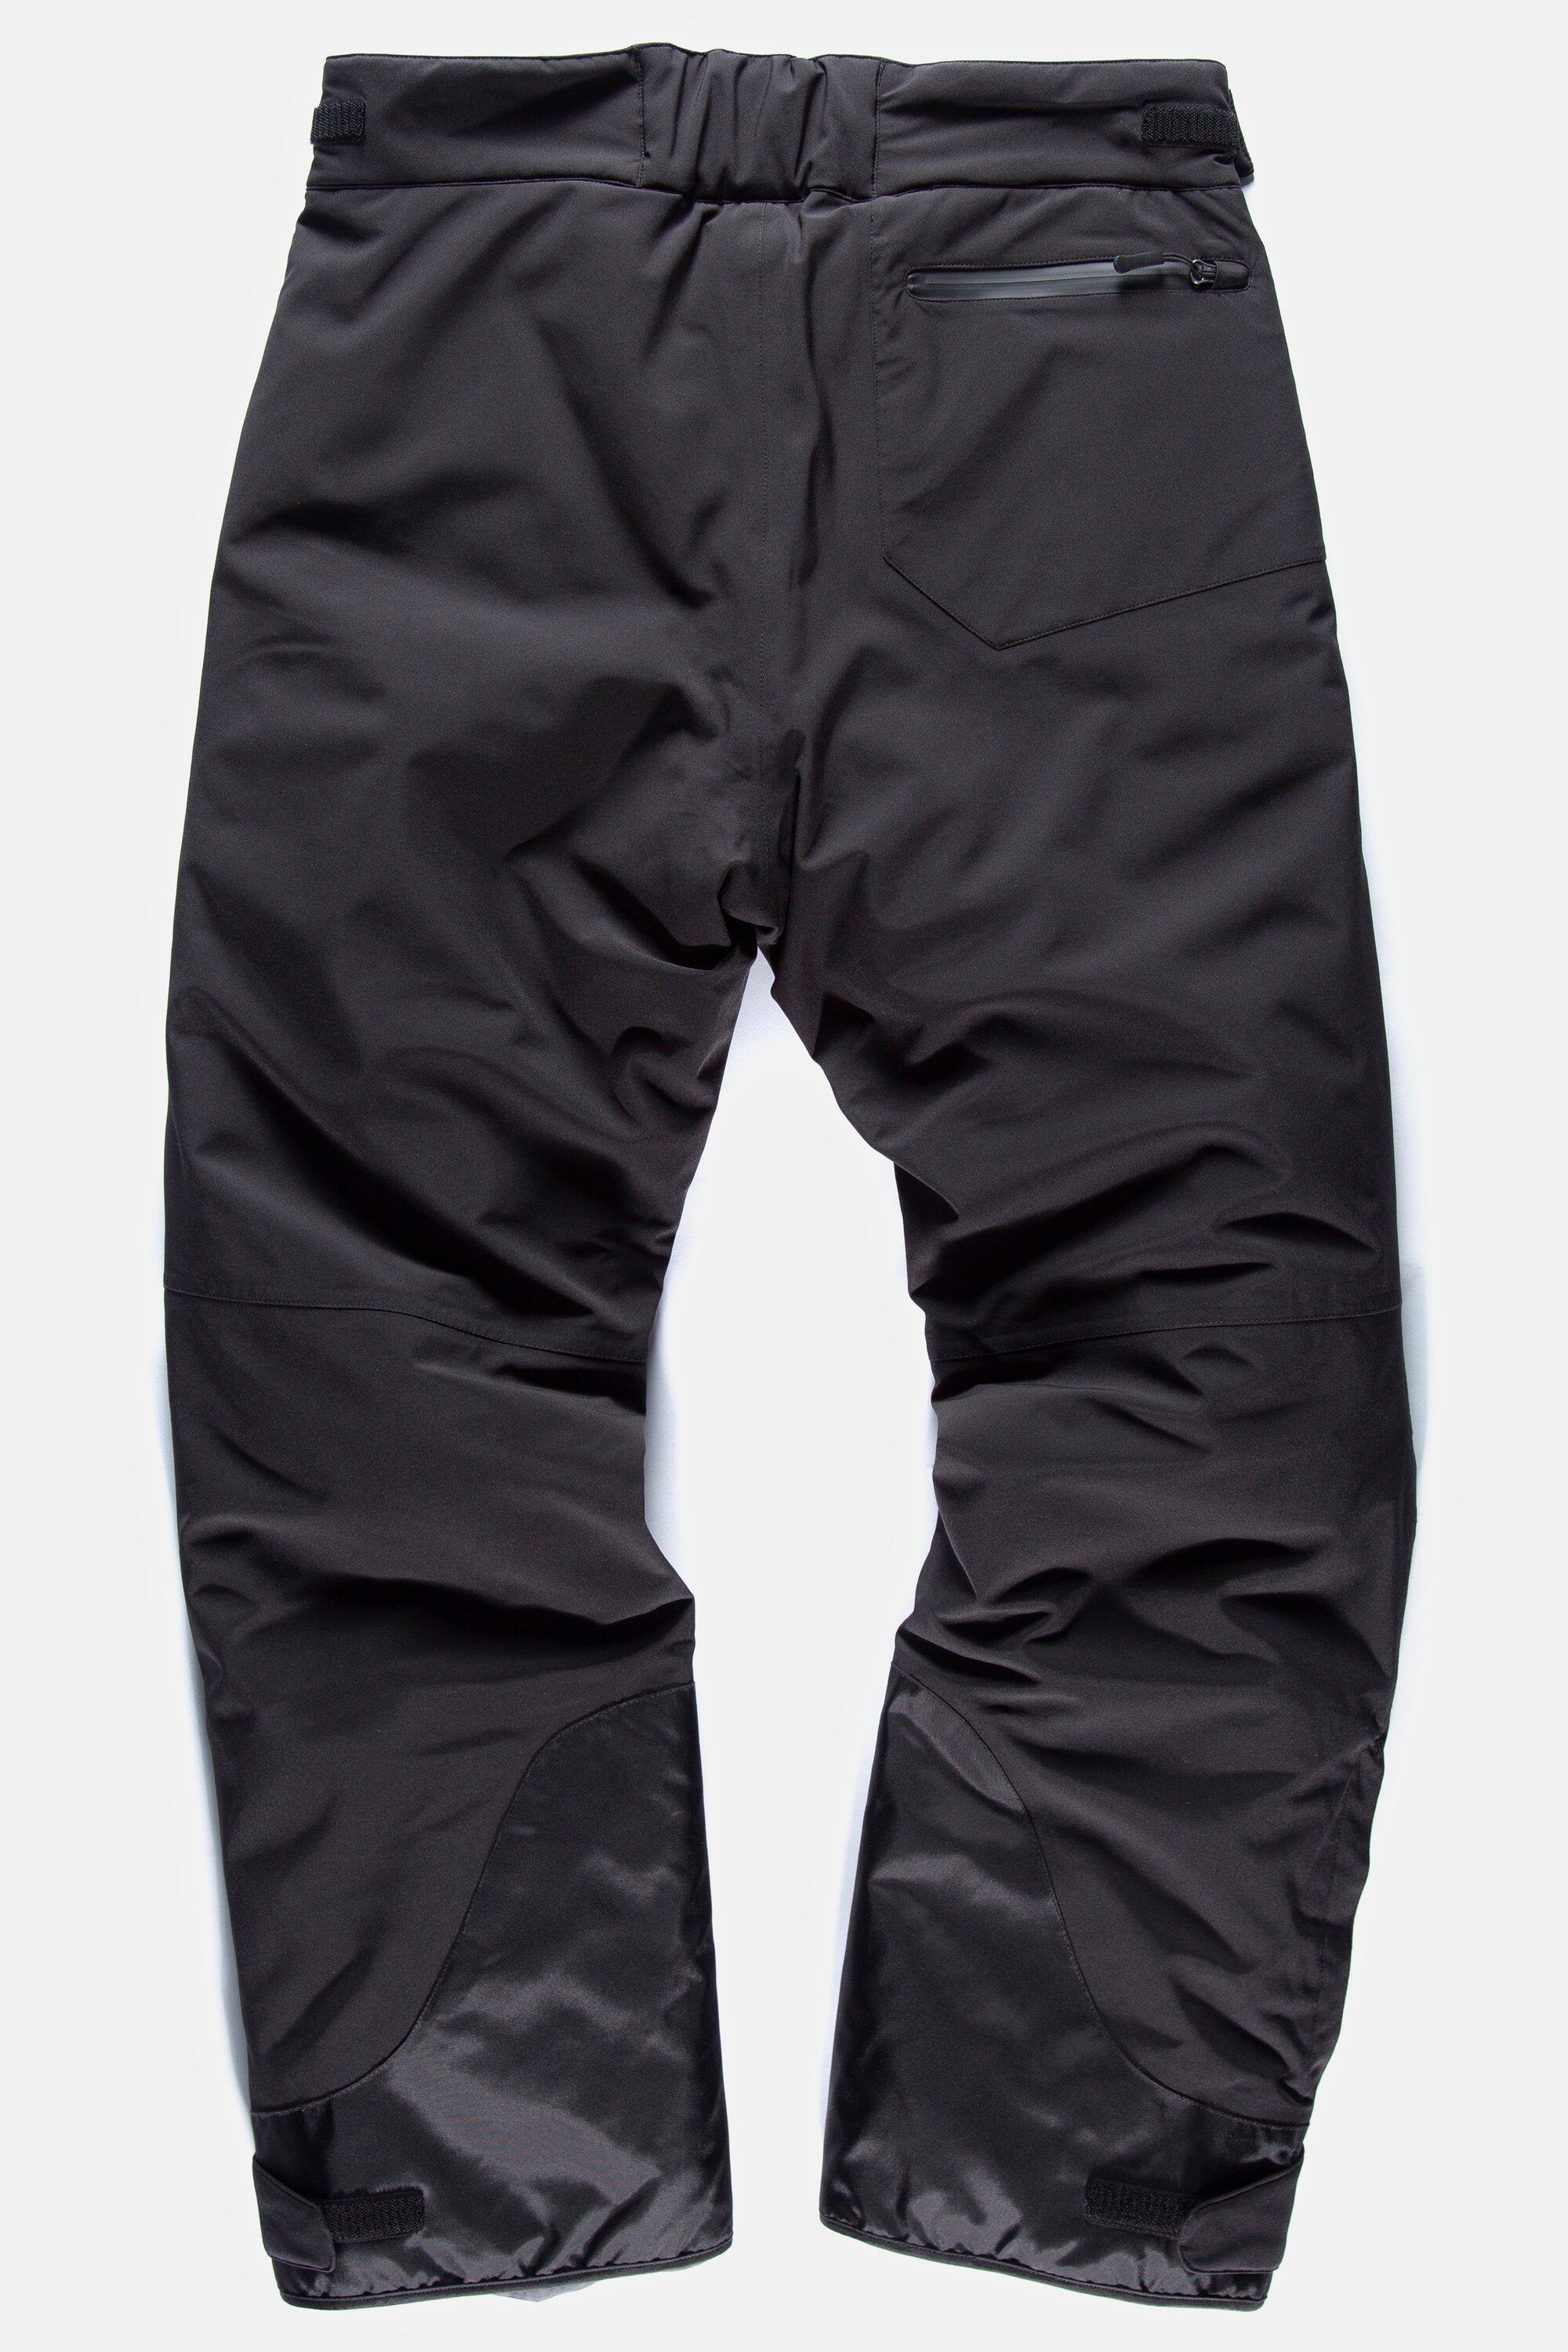 JP1880 Skihose Skihose Bauchfit schwarz Funktions-Qualität Skiwear